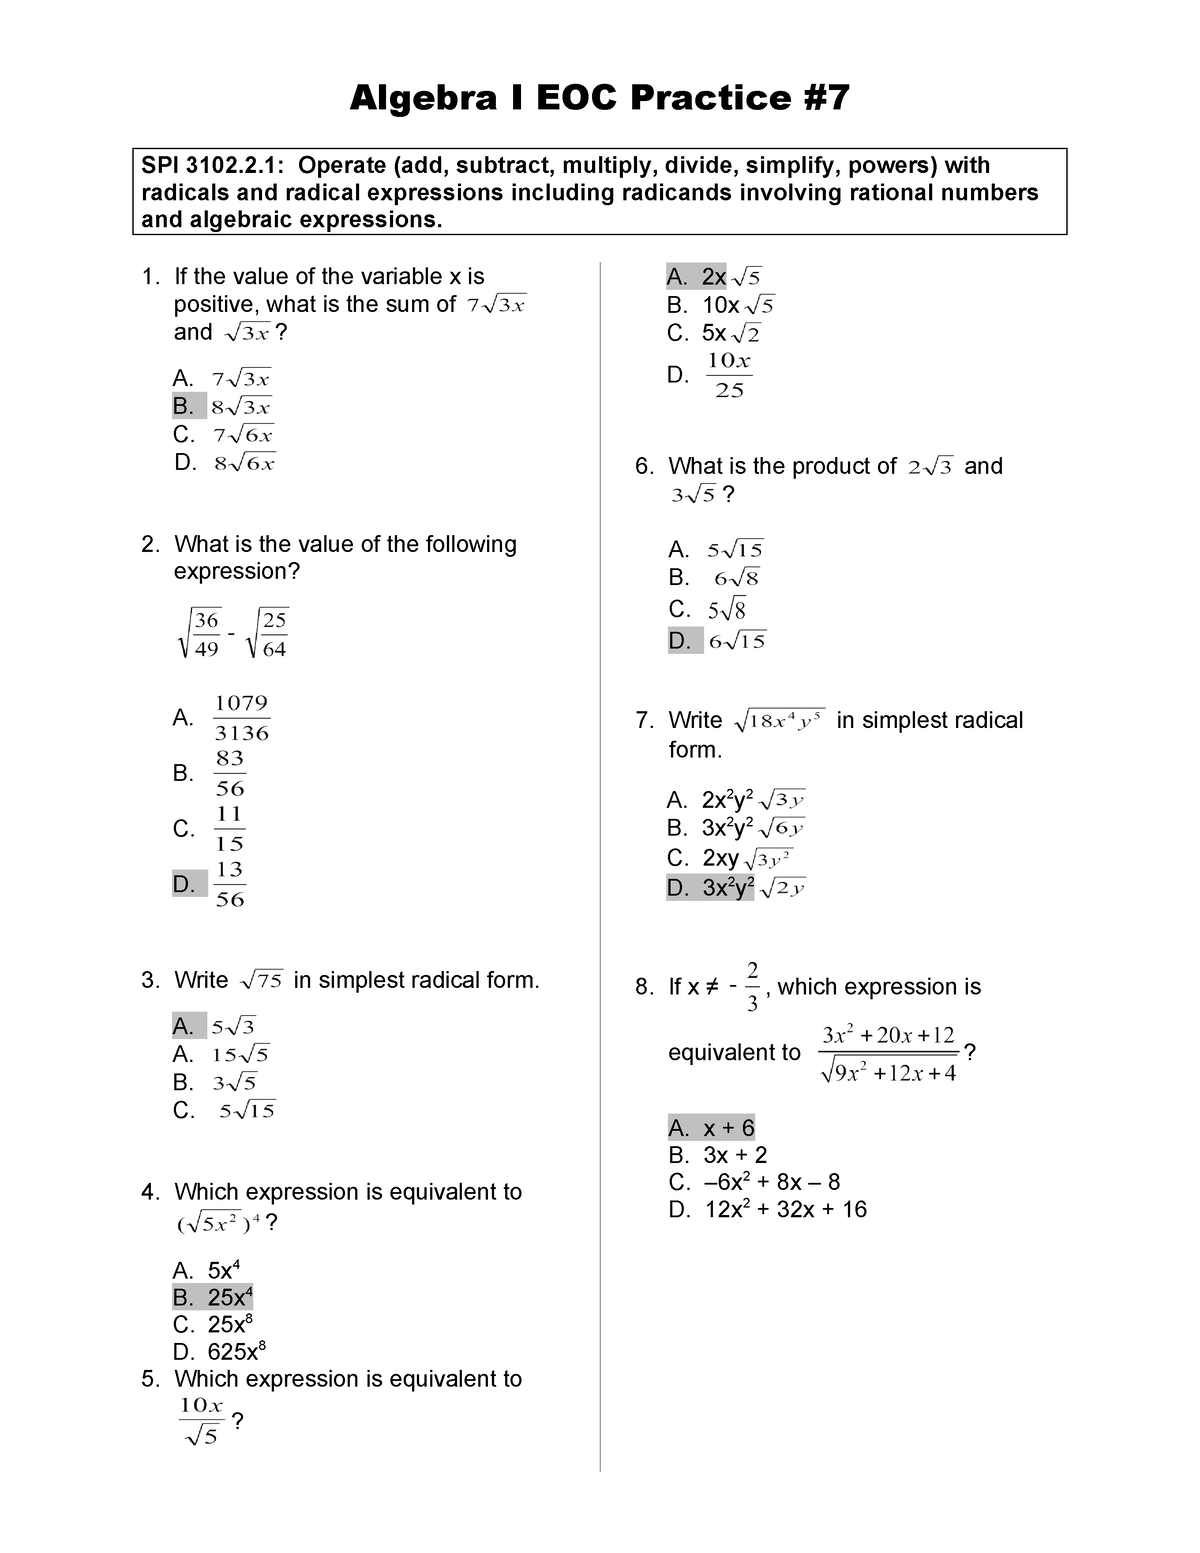 EOC Practice WS 7 Answers - Algebra I EOC Practice SPI 3102.2: Operate ...